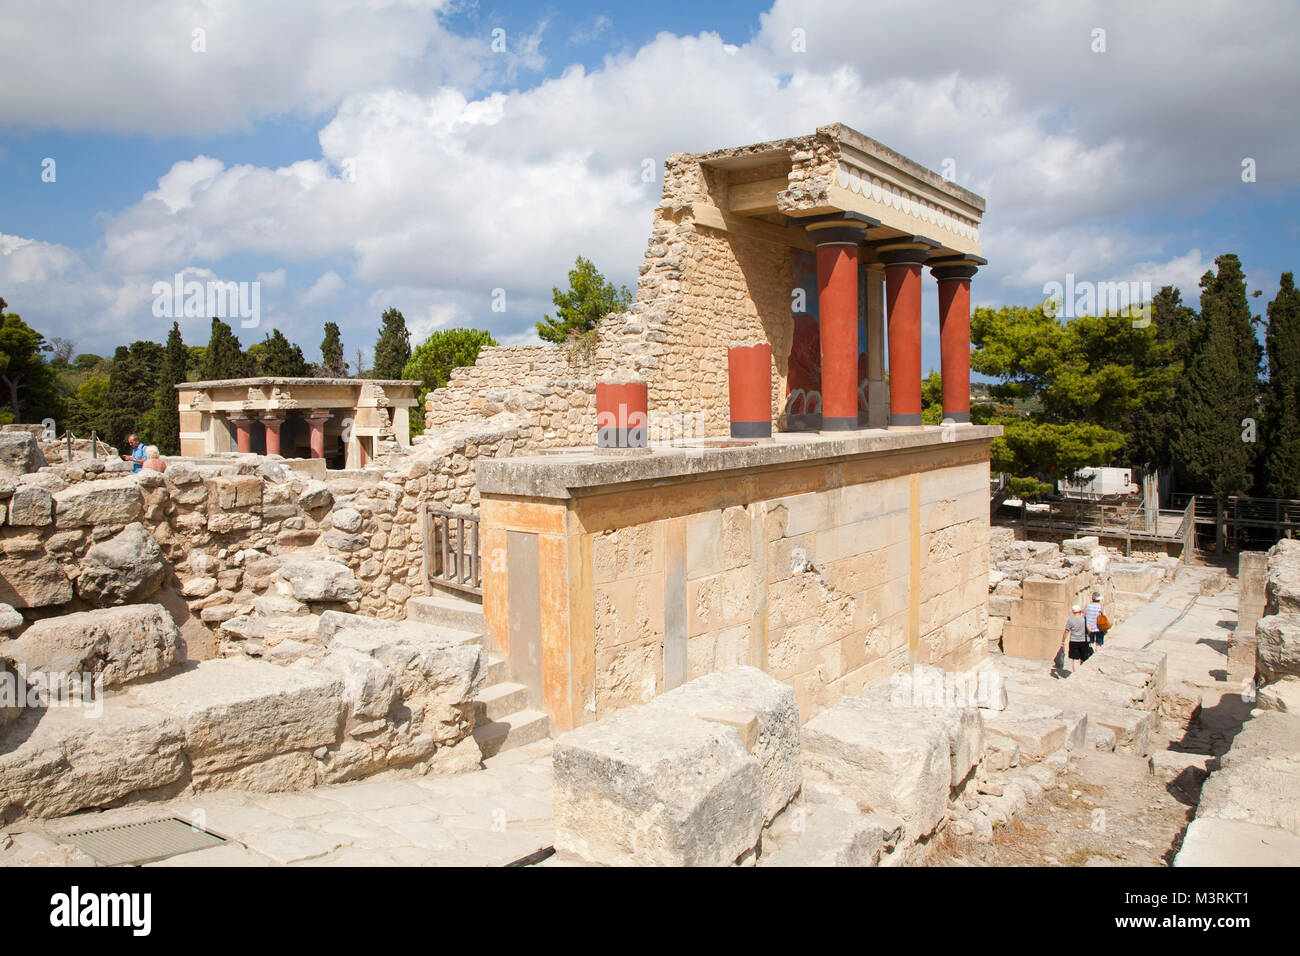 Entrée Nord, pilier nord Hall, Palais de Knossos site archéologique, l'île de Crète, Grèce, Europe Banque D'Images